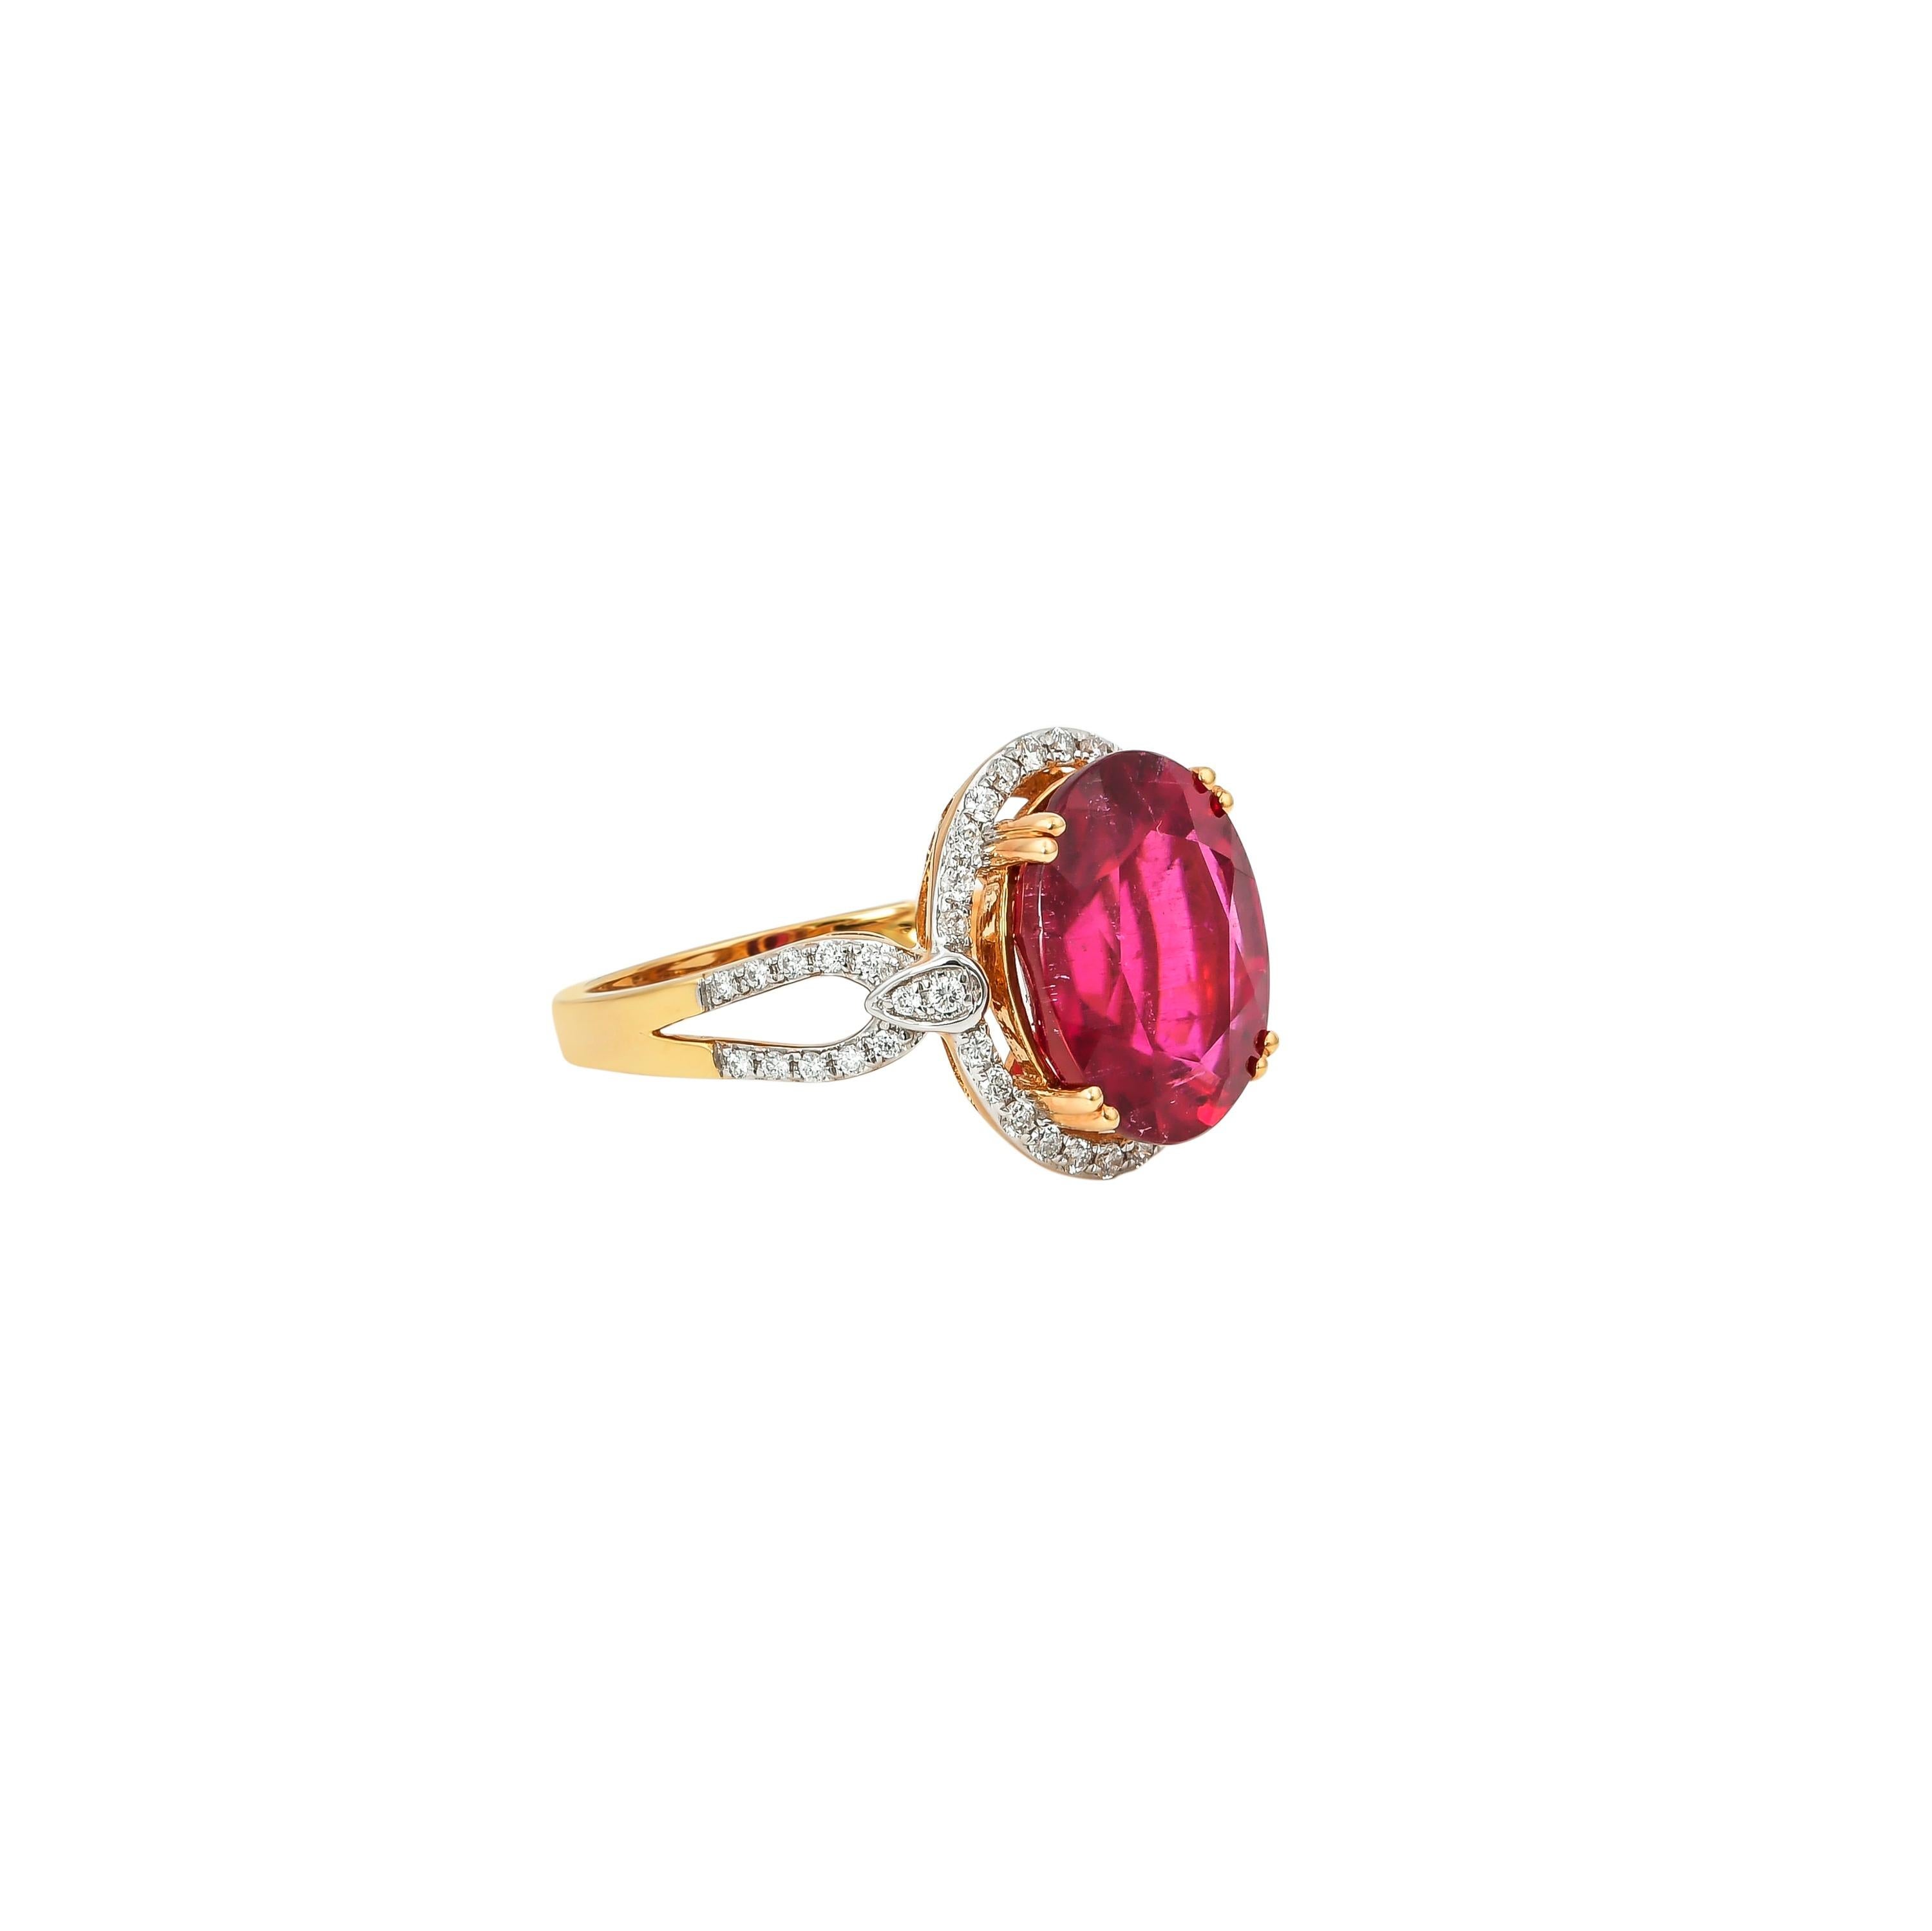 Diese Ringkollektion besteht aus den strahlendsten Rubeliten. Diese Edelsteine haben eine prächtige und königliche tiefrote Farbe, und die Akzente aus Gelbgold und Diamanten machen diese Stücke zu einem echten Hingucker. 

Klassischer Rubelitring